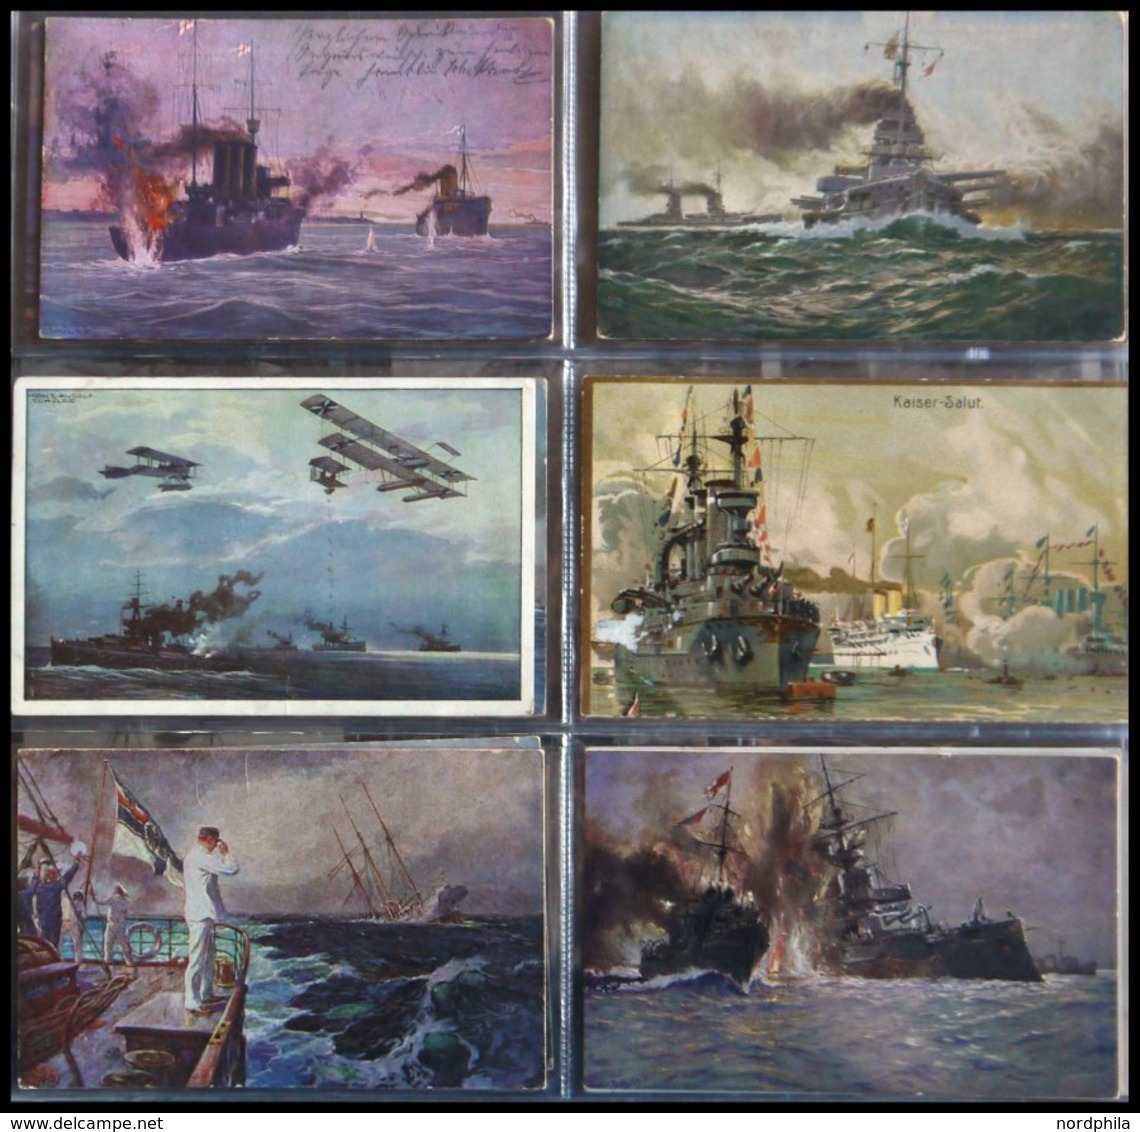 ALTE POSTKARTEN - SCHIFFE KAISERL. MARINE BIS 1918 der deutsche Seekrieg und Schlachtszenen, interessante Sammlung von 7